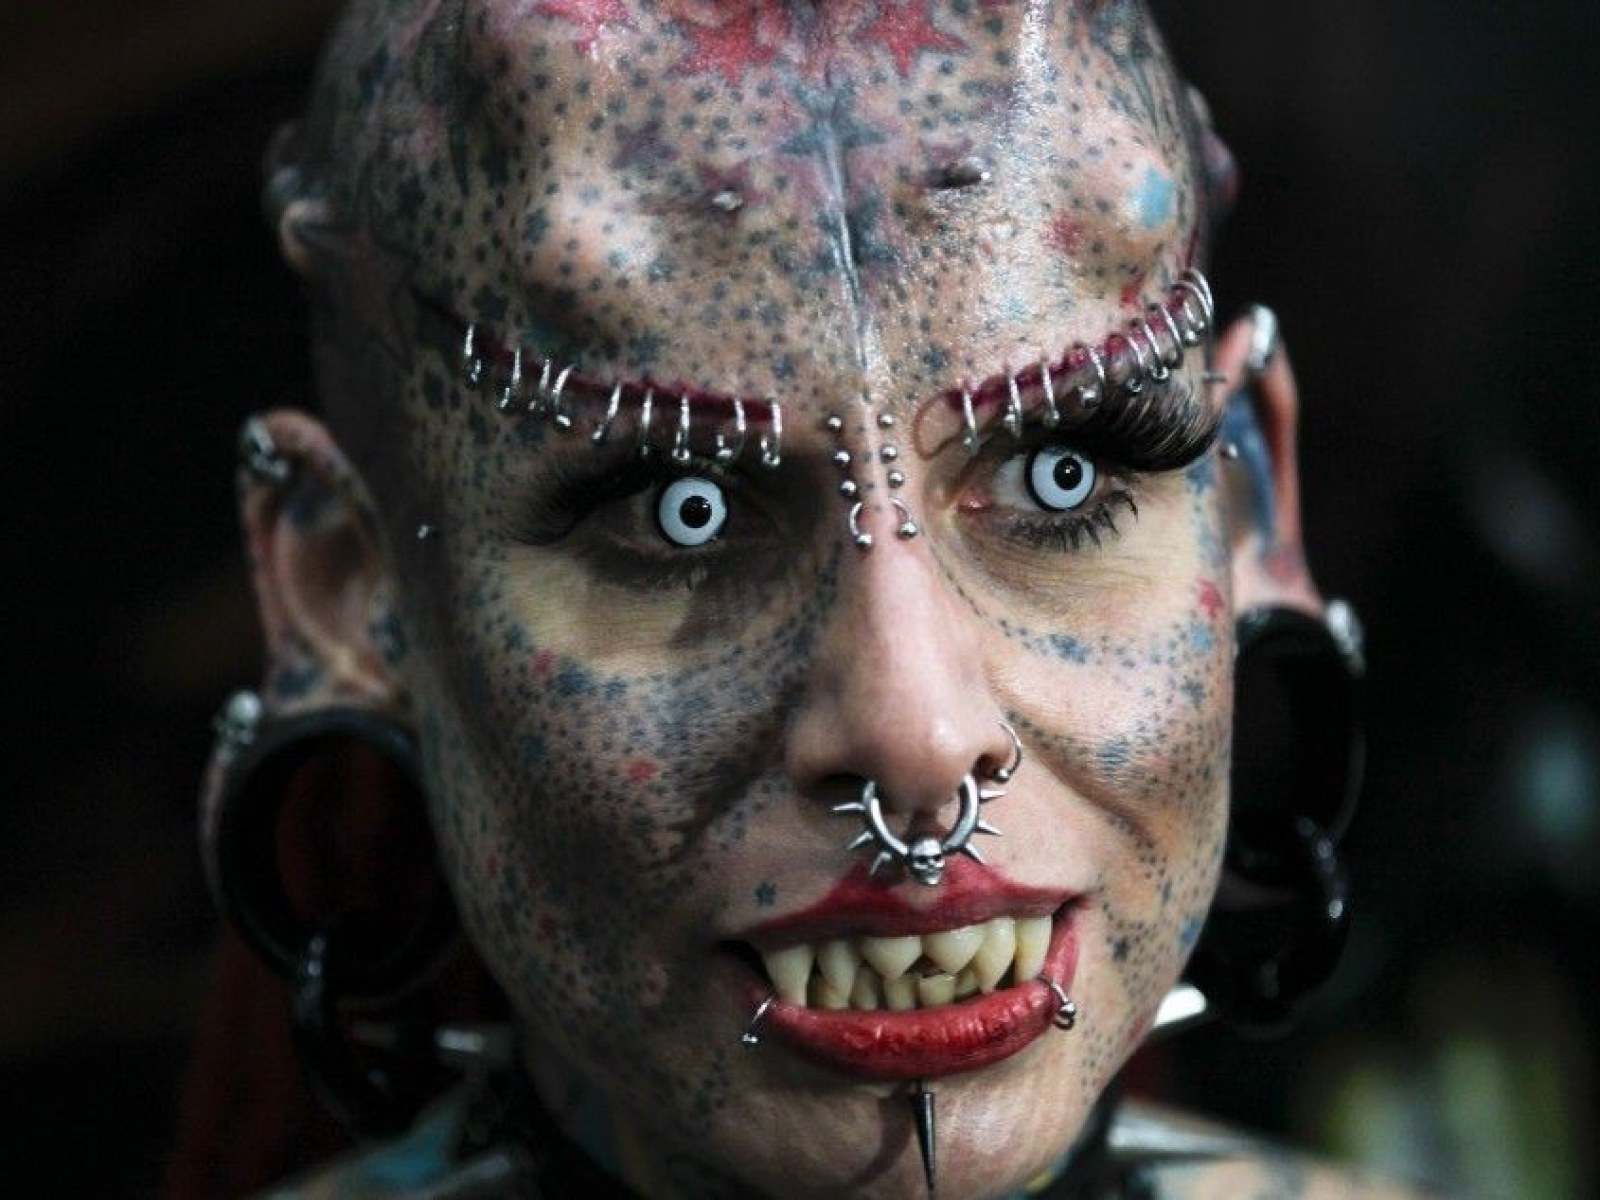 The Vampire Woman of Mexico: 'La Mujer Vampiro' [PHOTOS]